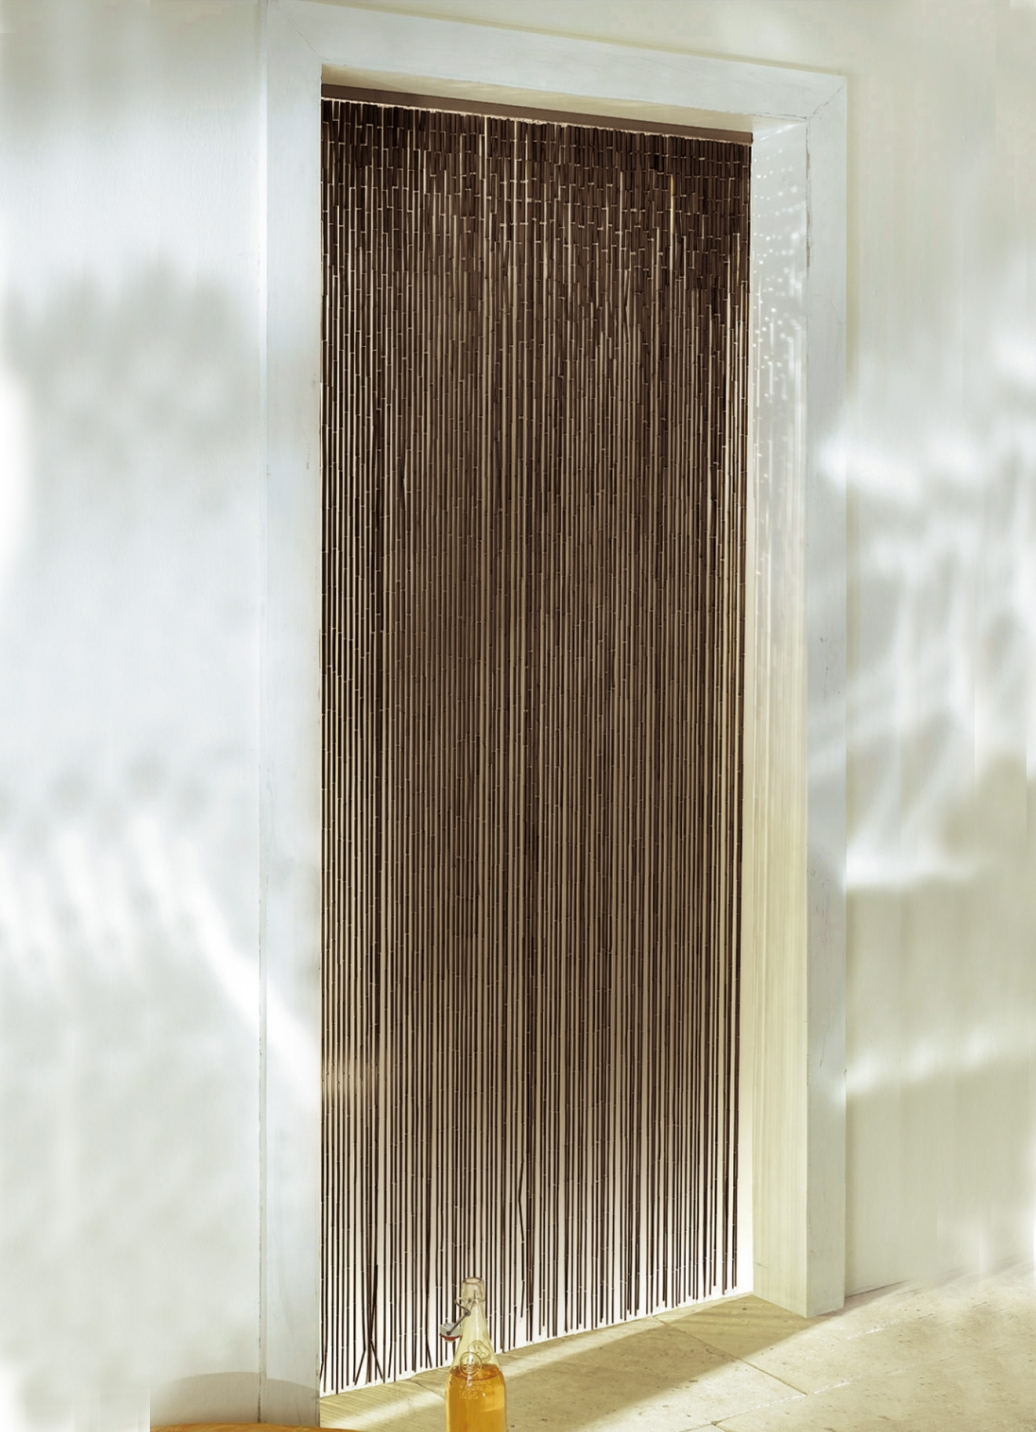 Bambus Vorhang In 2 Farben Gardinen